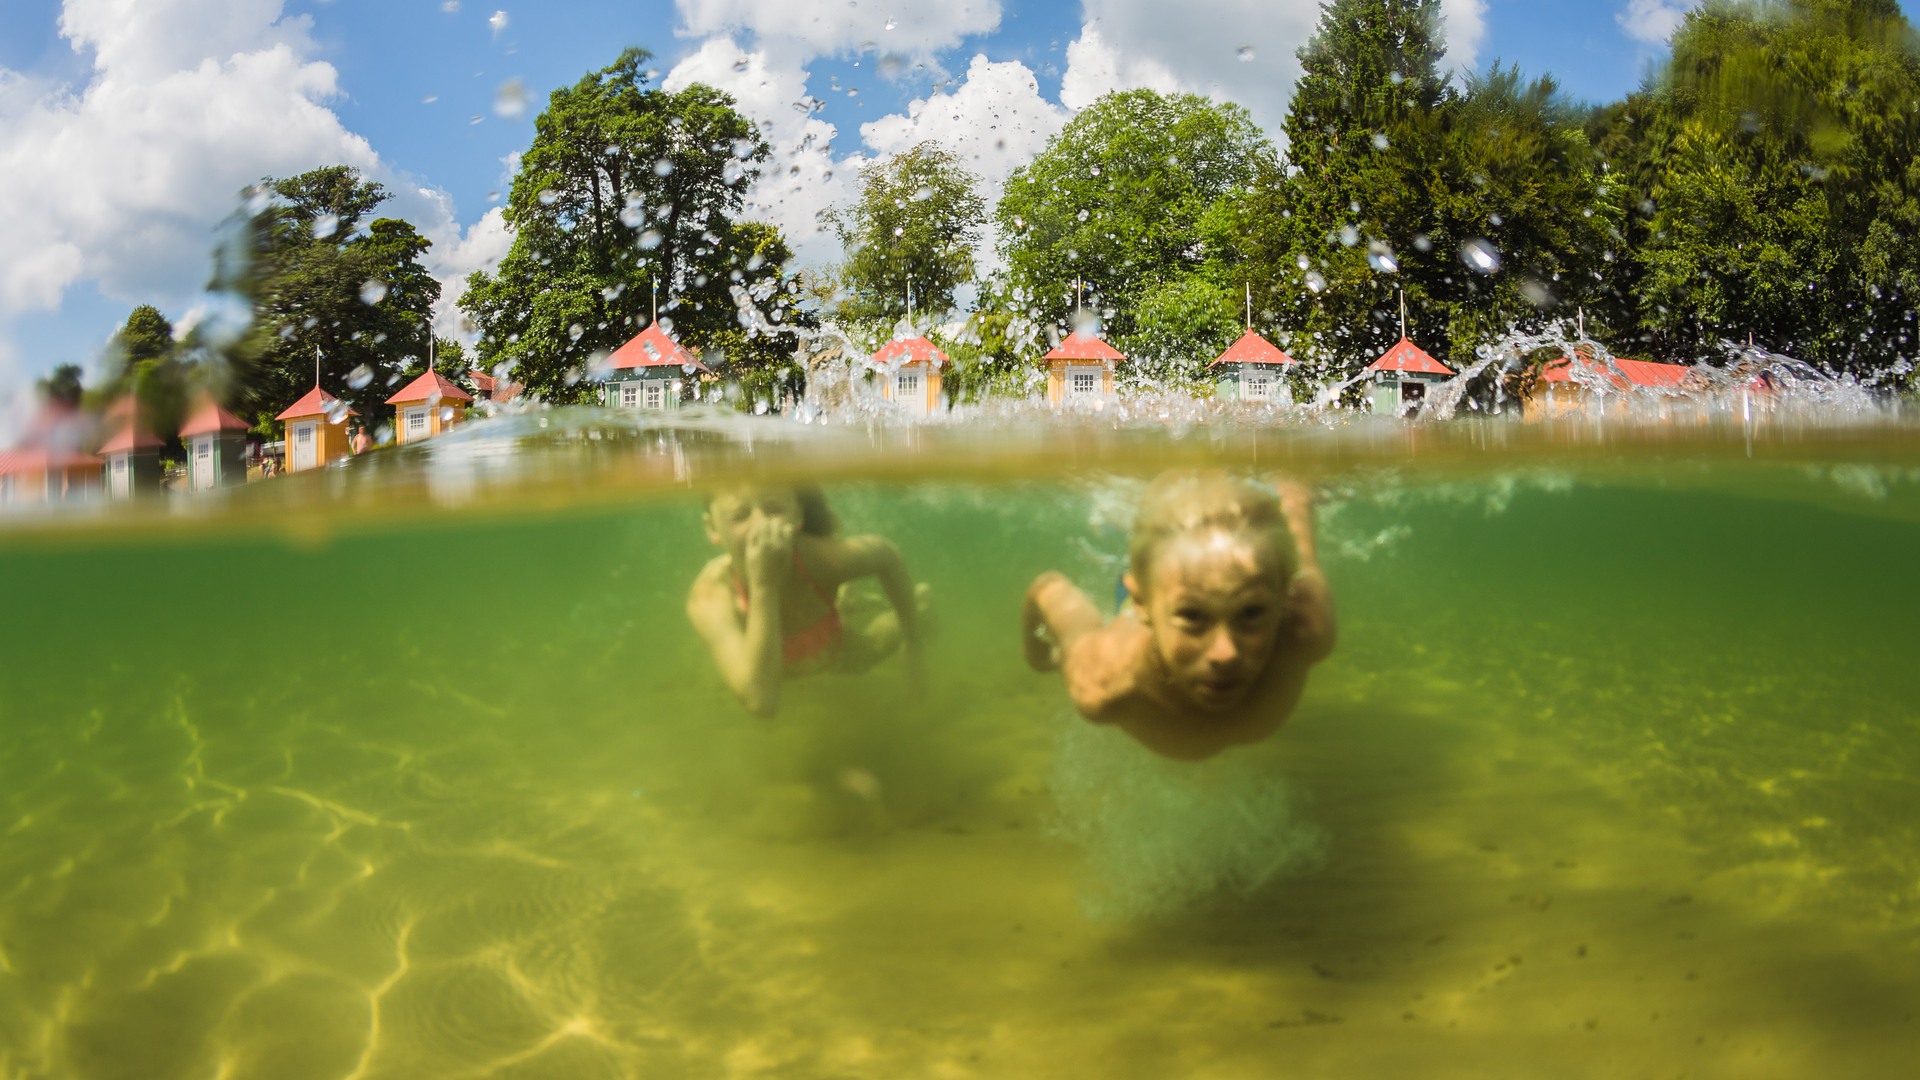 Två barn simmar under vattnet vid stranden på Guldkroksbadet. Badhytterna syns i bakgrunden.